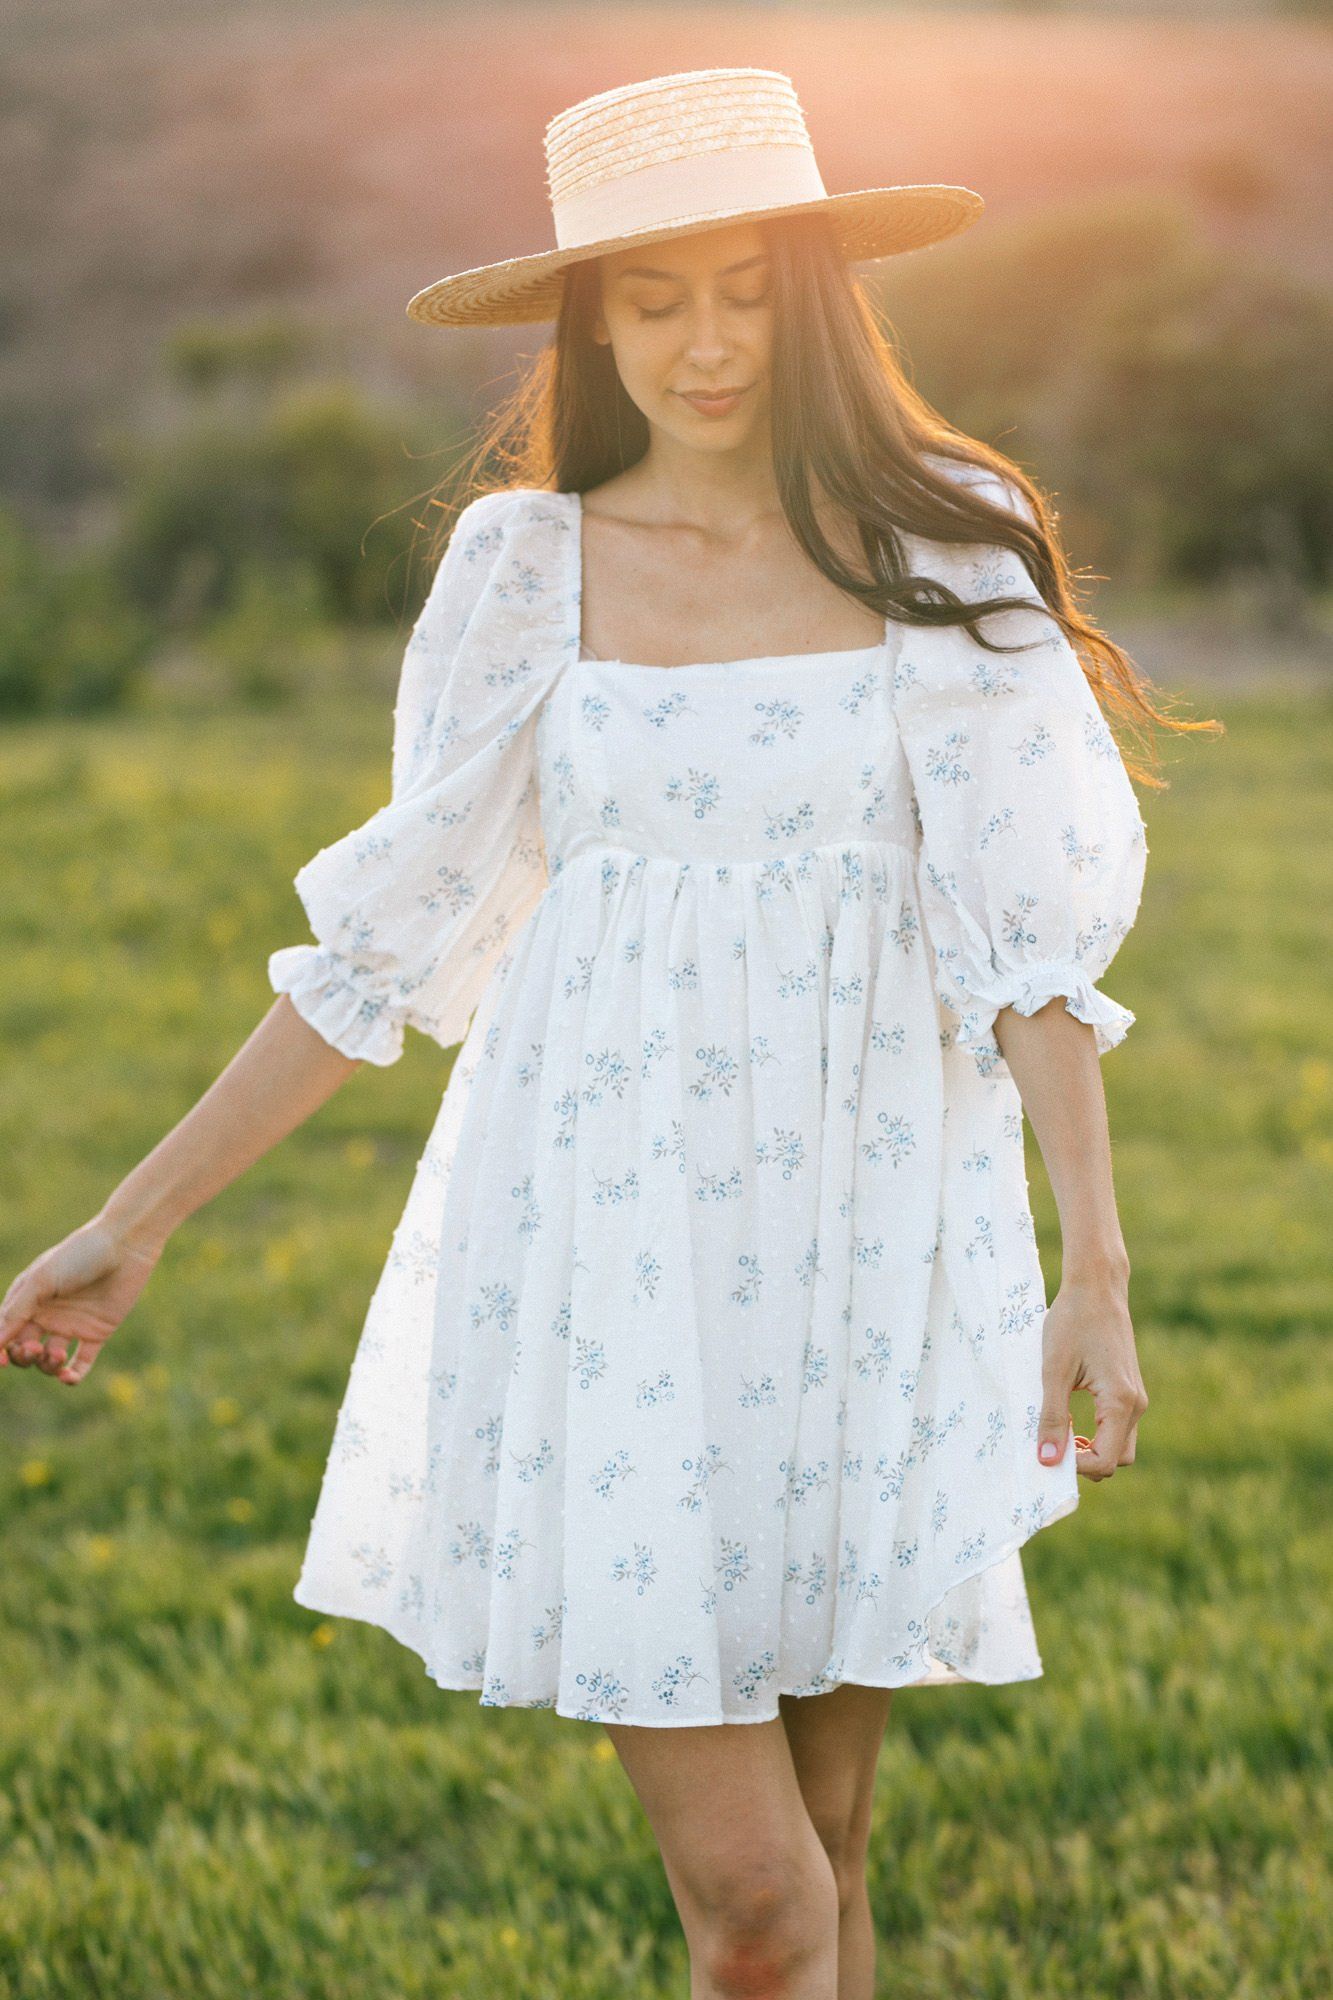 The V Neck Button Floral Midi Dress & Reviews - Blue - Dresses | RIHOAS